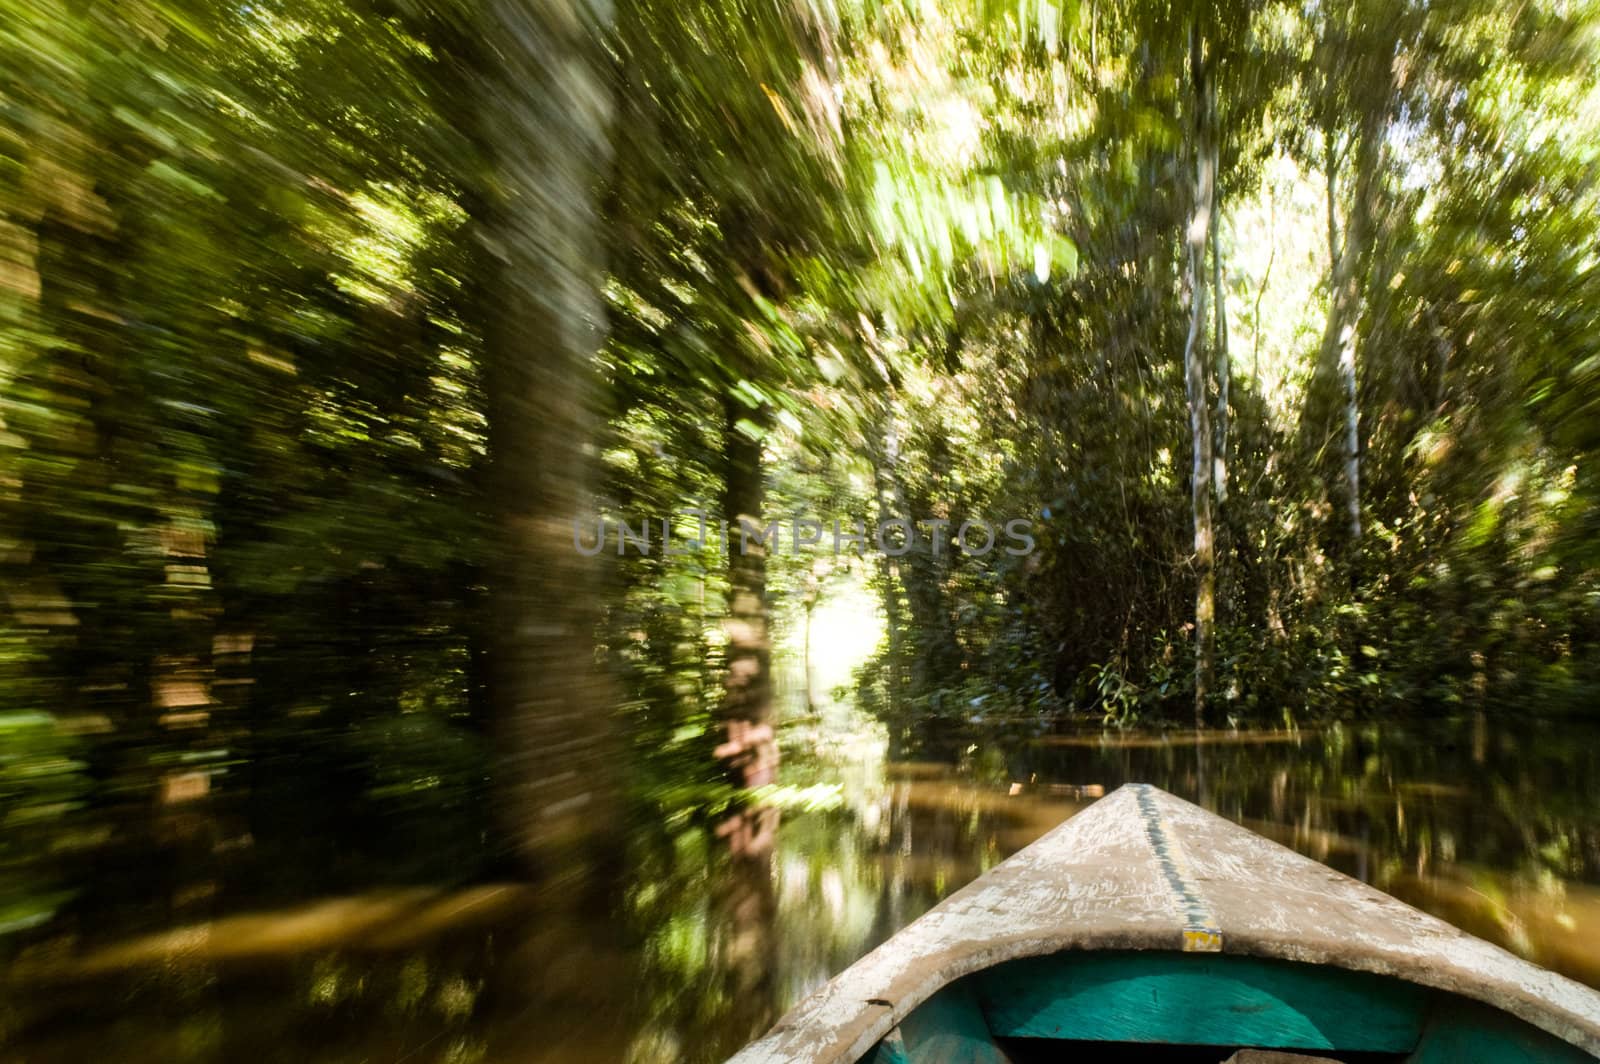 Canoe in Amazon Rainforest by edan